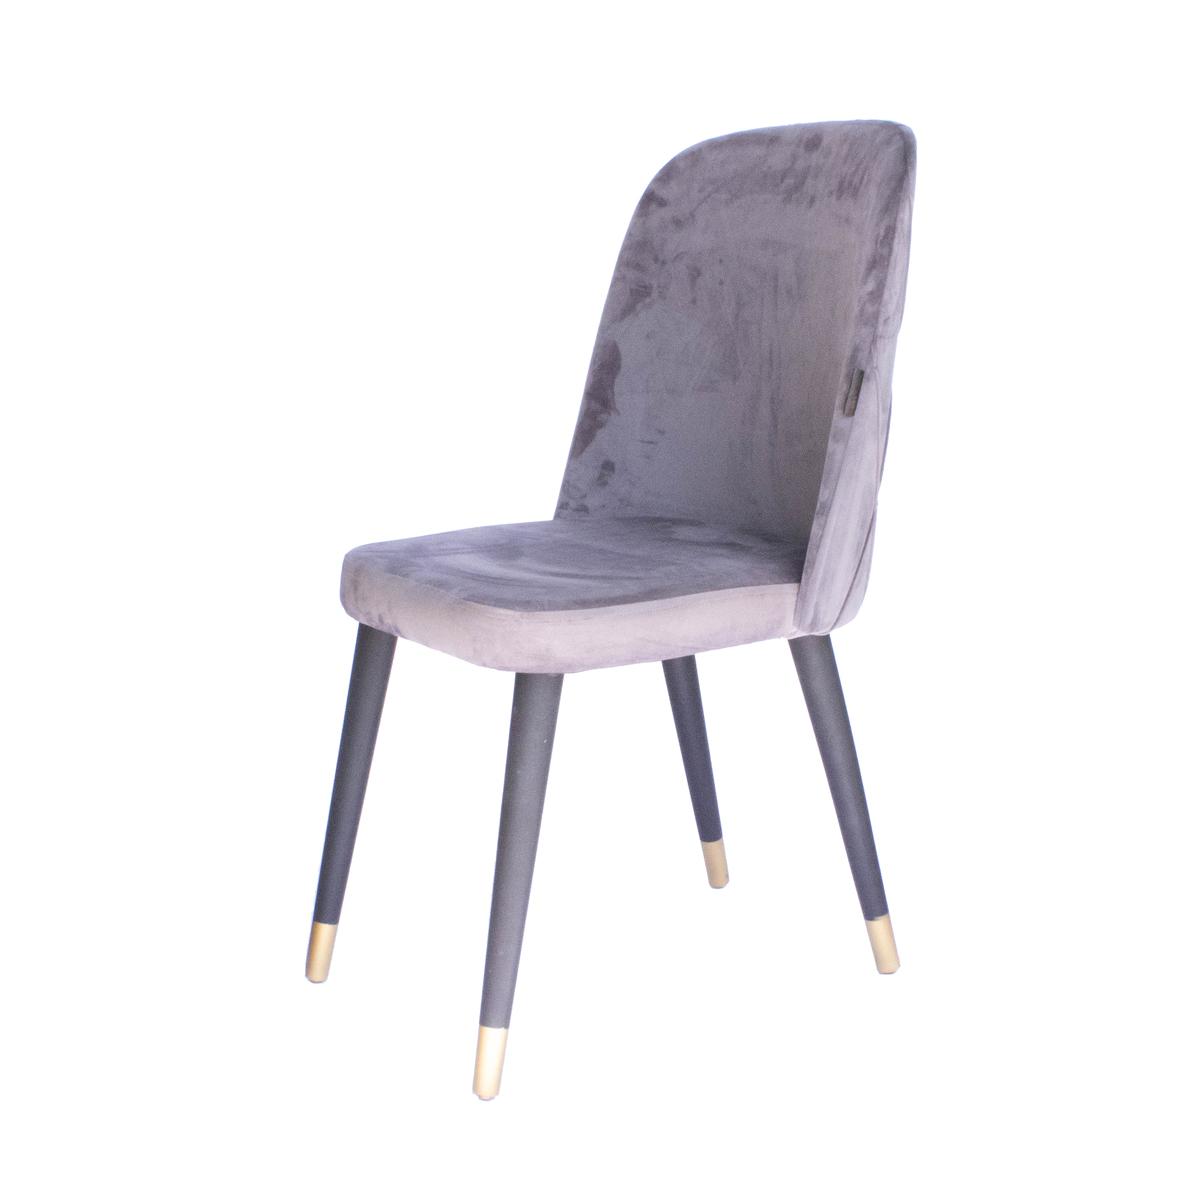 Turkish chair